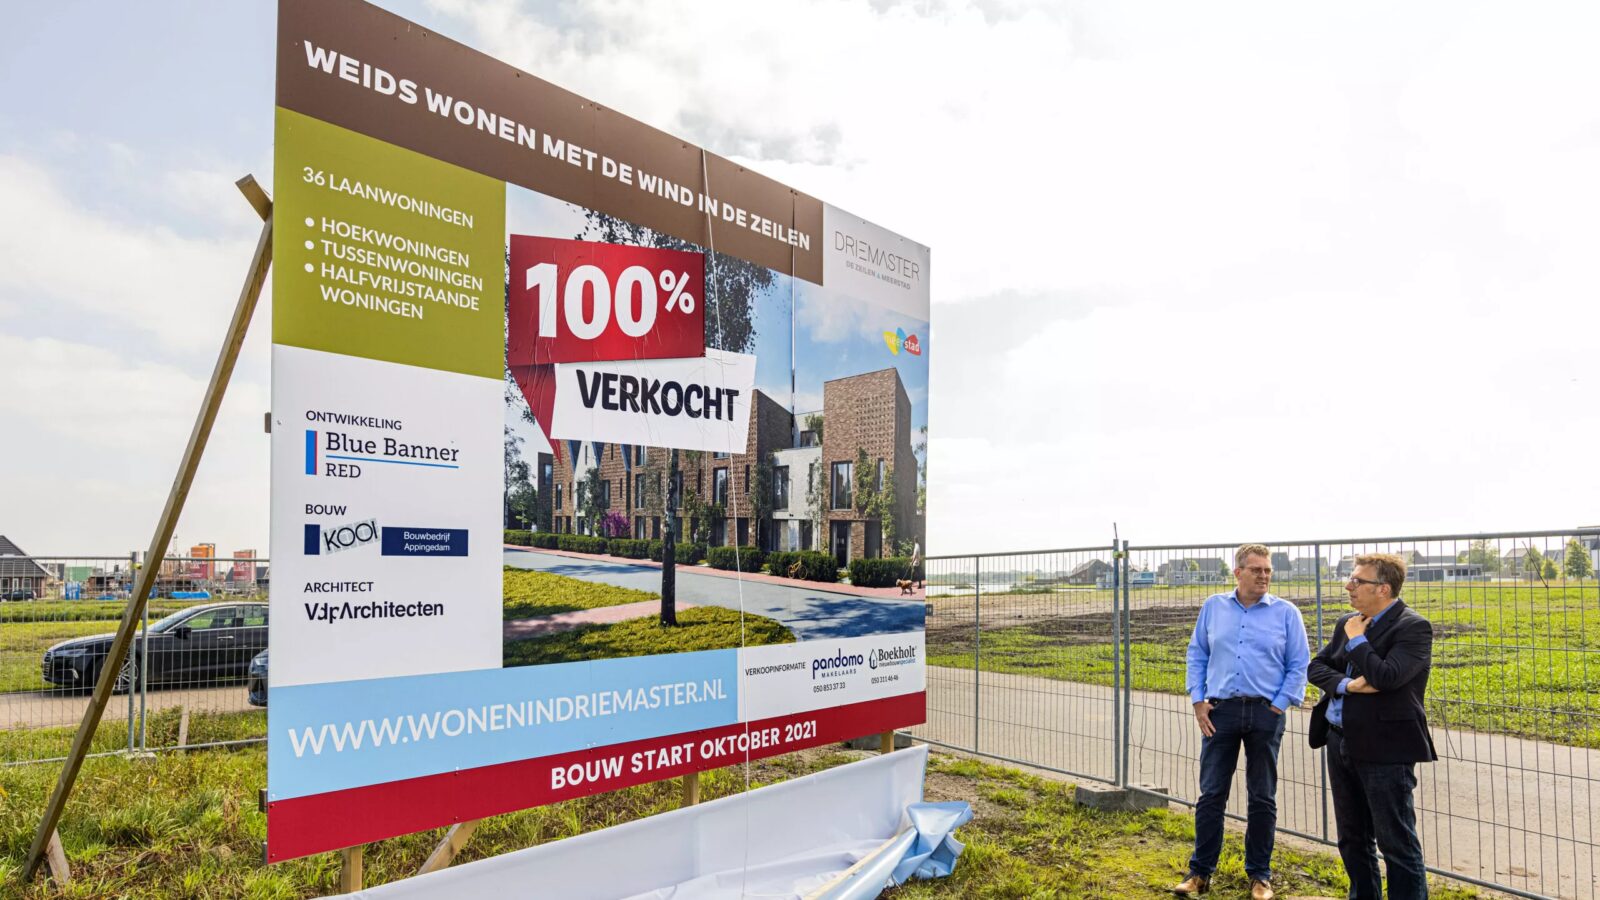 Allereerste projectbouwwoningen worden gebouwd in jongste wijk van Meerstad: De Zeilen